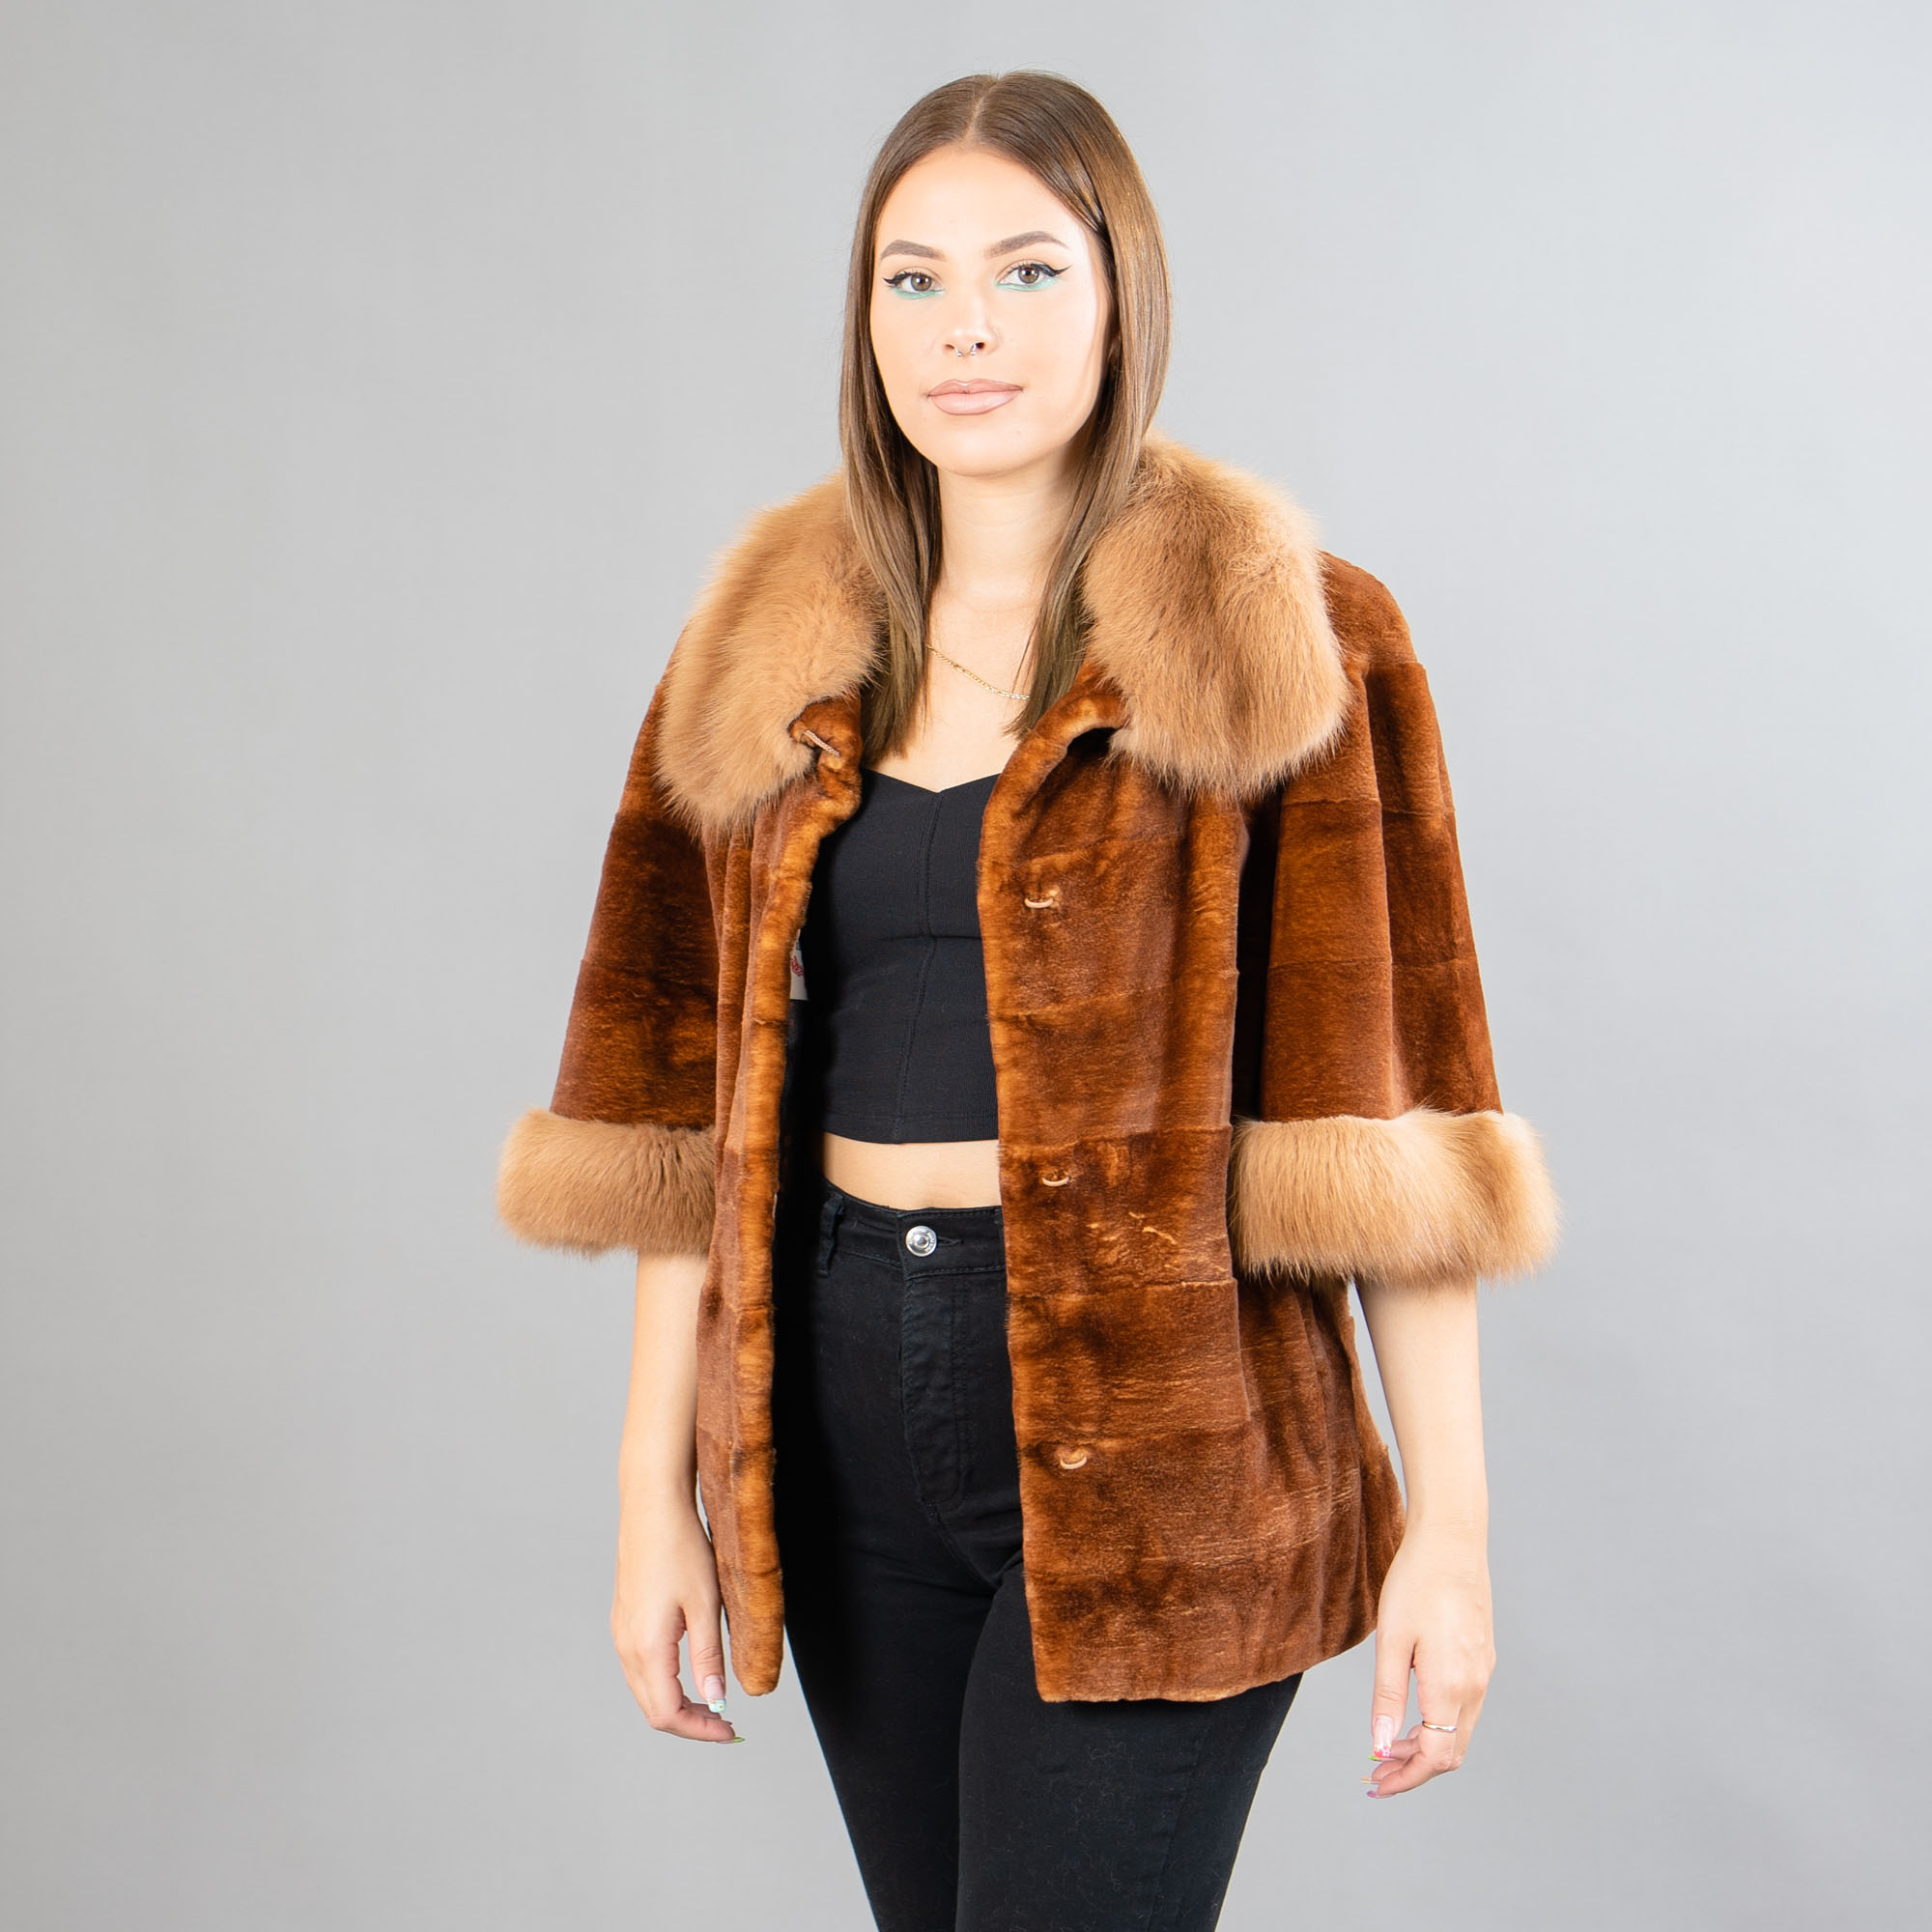 mink and marten fur jacket in brown color